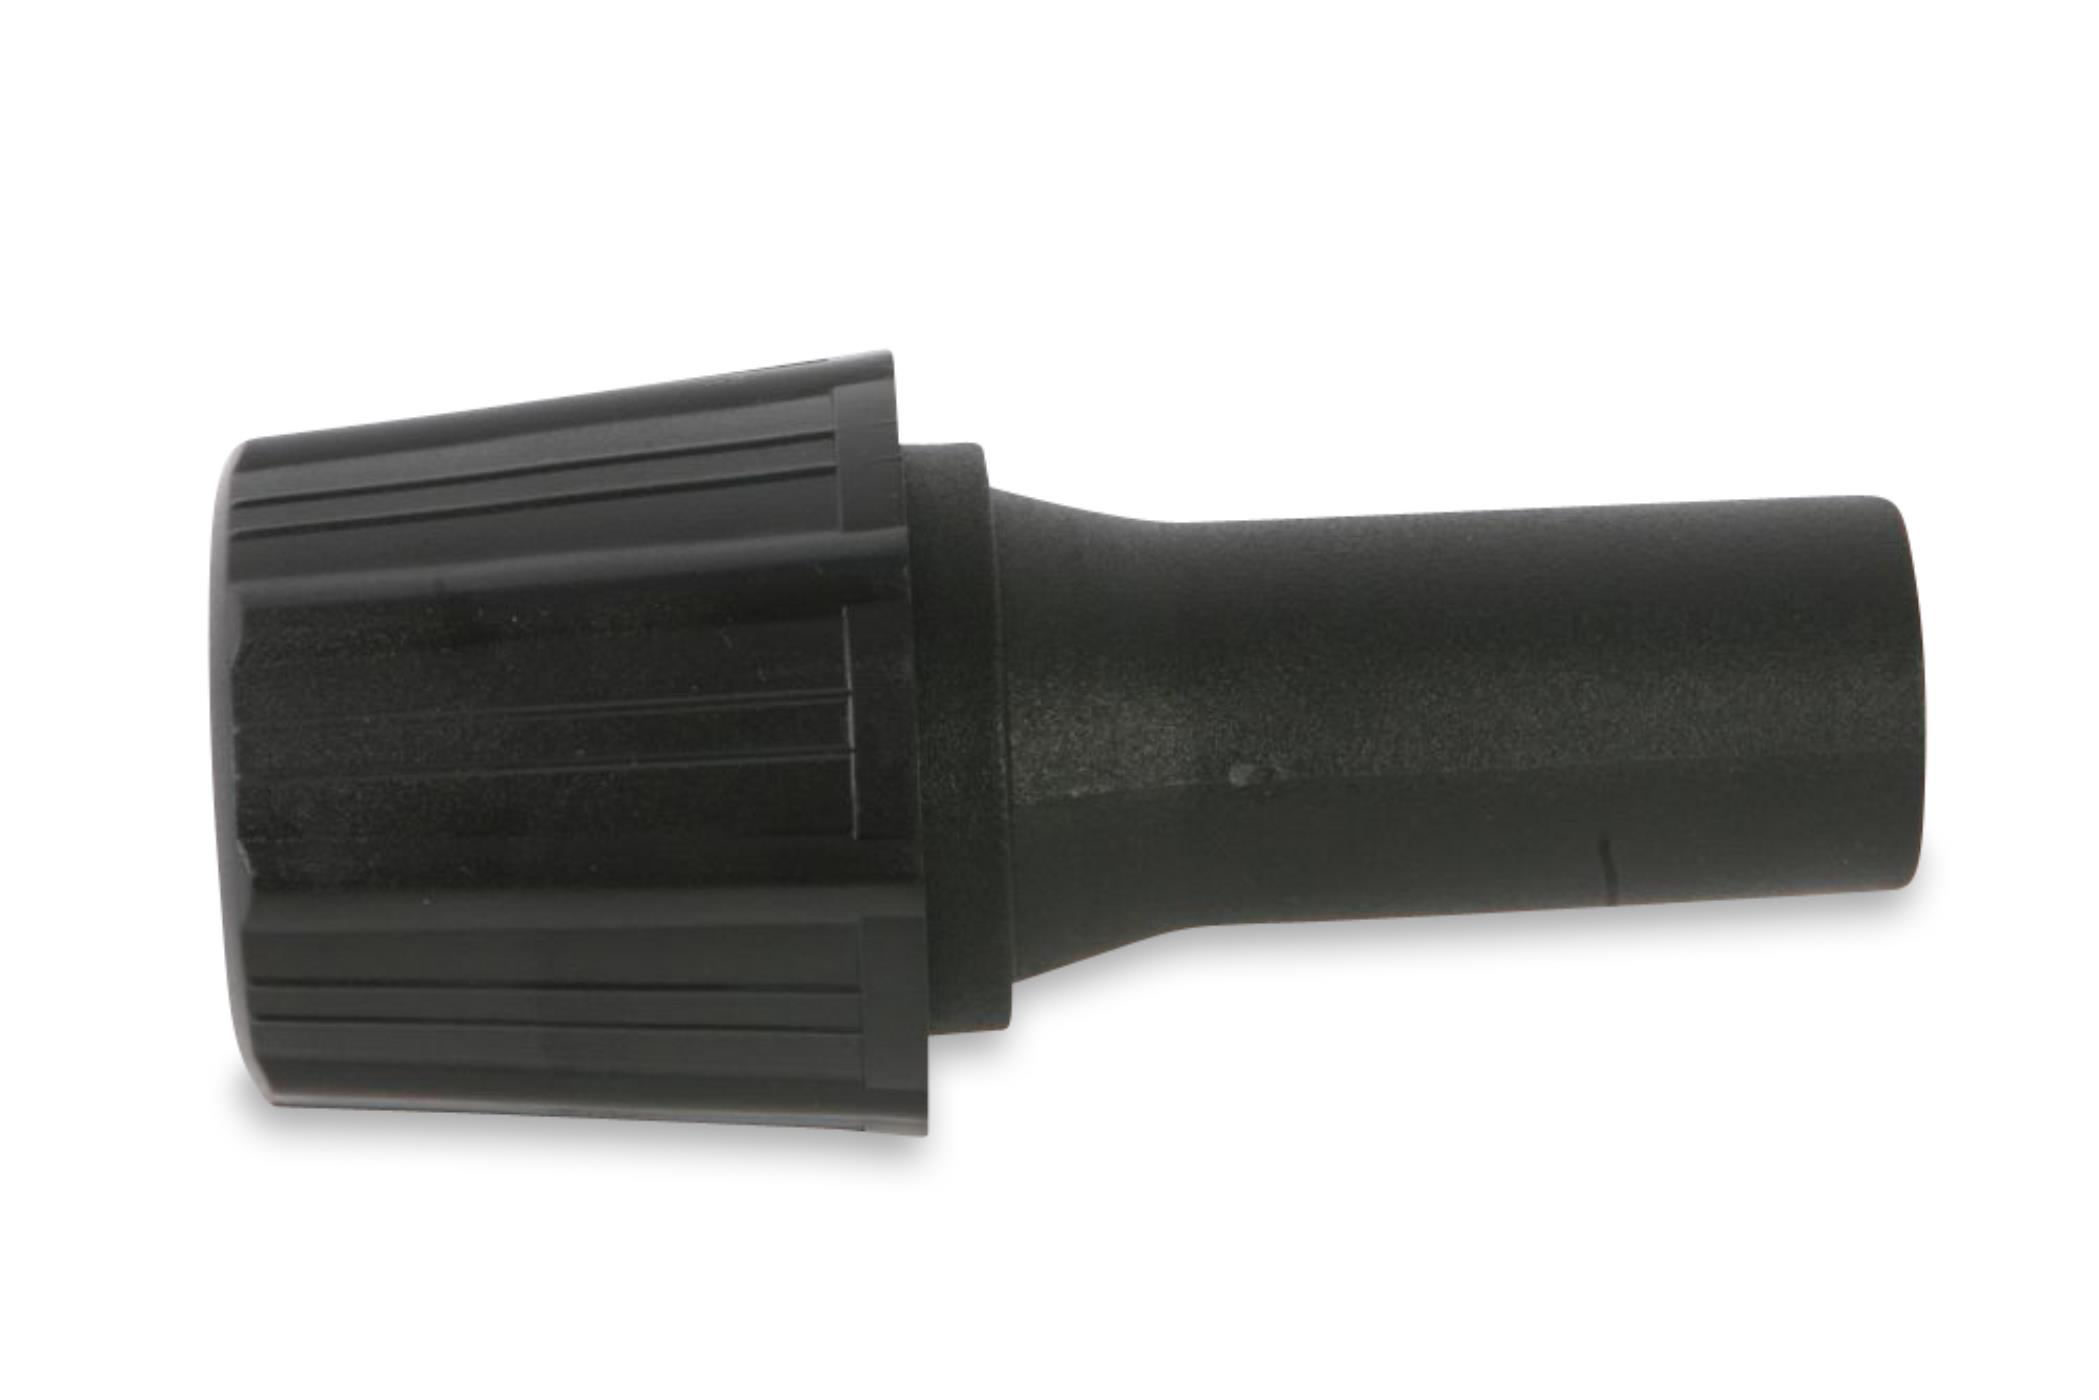 STAUBSAUGERLADEN.DE Universal Adapter für Staubsaugerrohr 30-37 Staubsaugeraufsatz Düsen mit mm auf 35mm